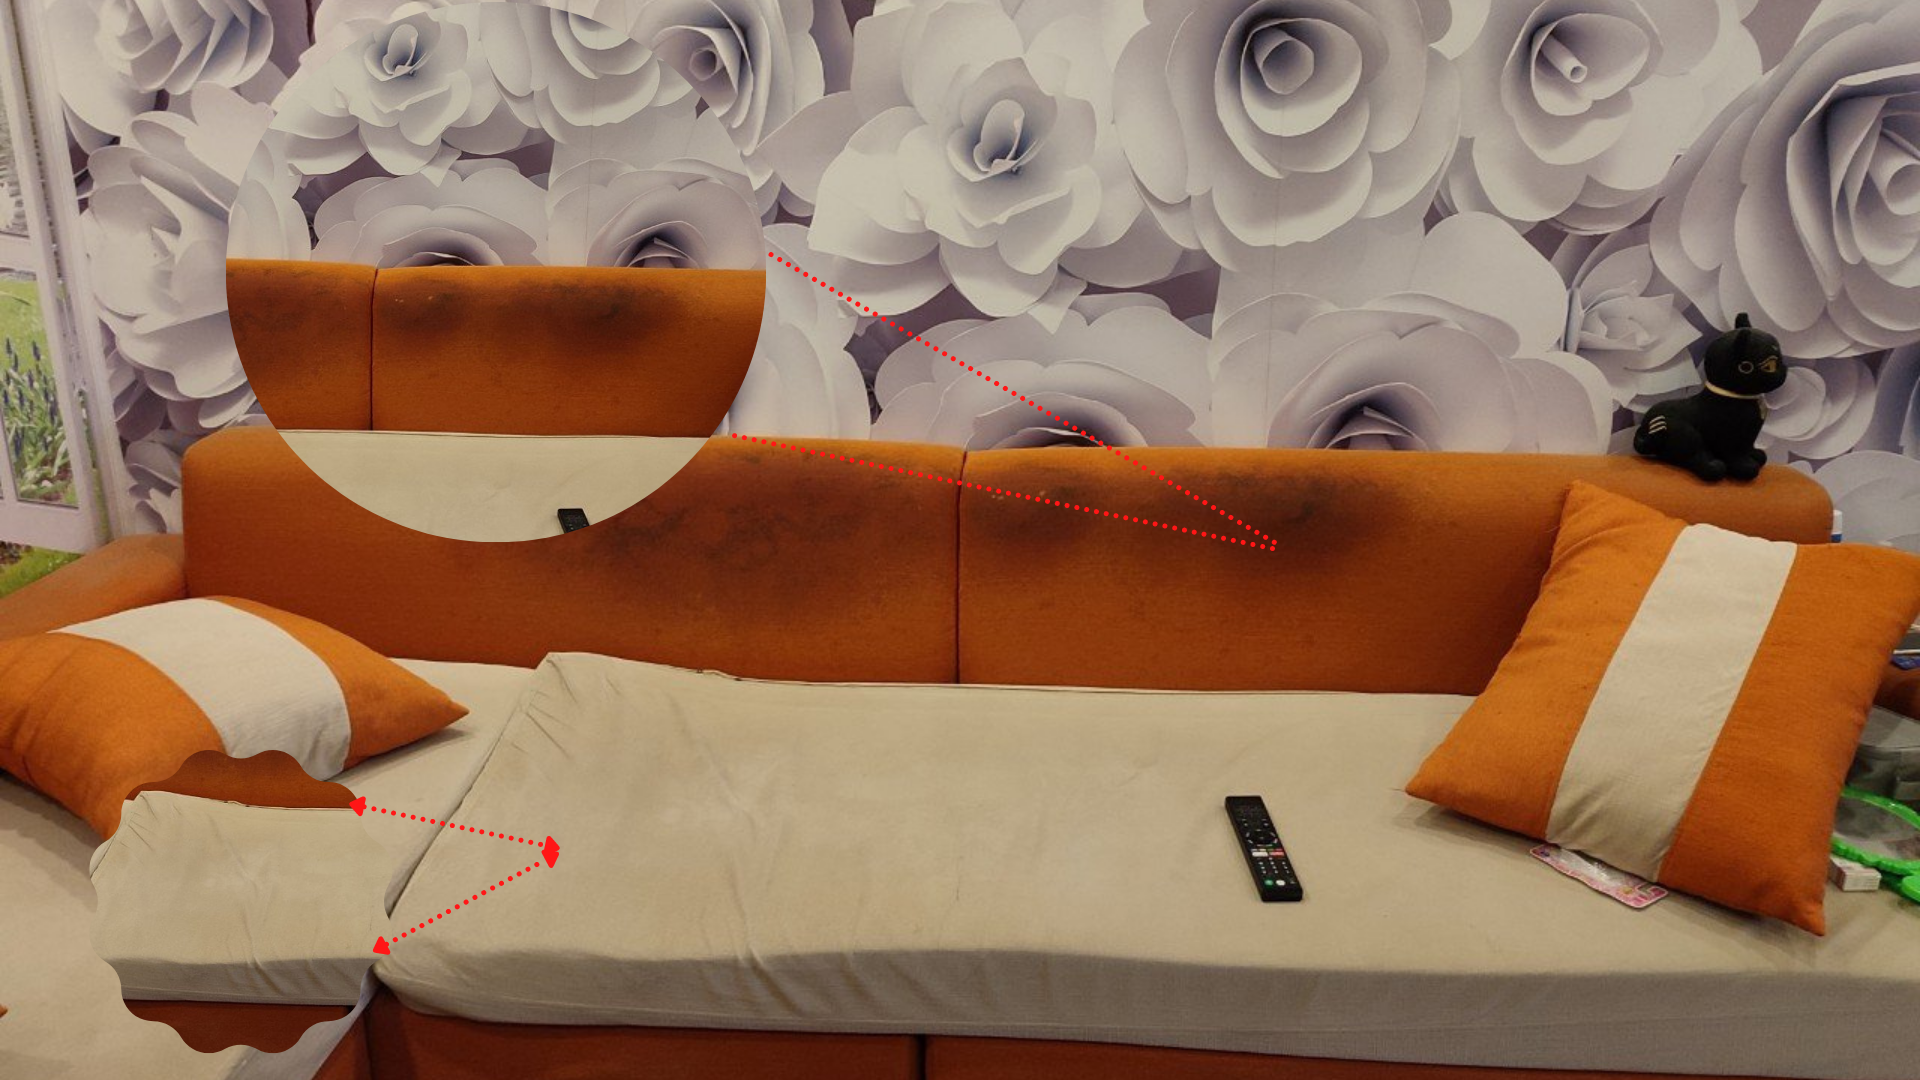 Hình ảnh nguyên trạng của bộ sofa của khách tại Trung Văn đnag gặp phải những vết bẩn bám đen và phần vỏ nhão